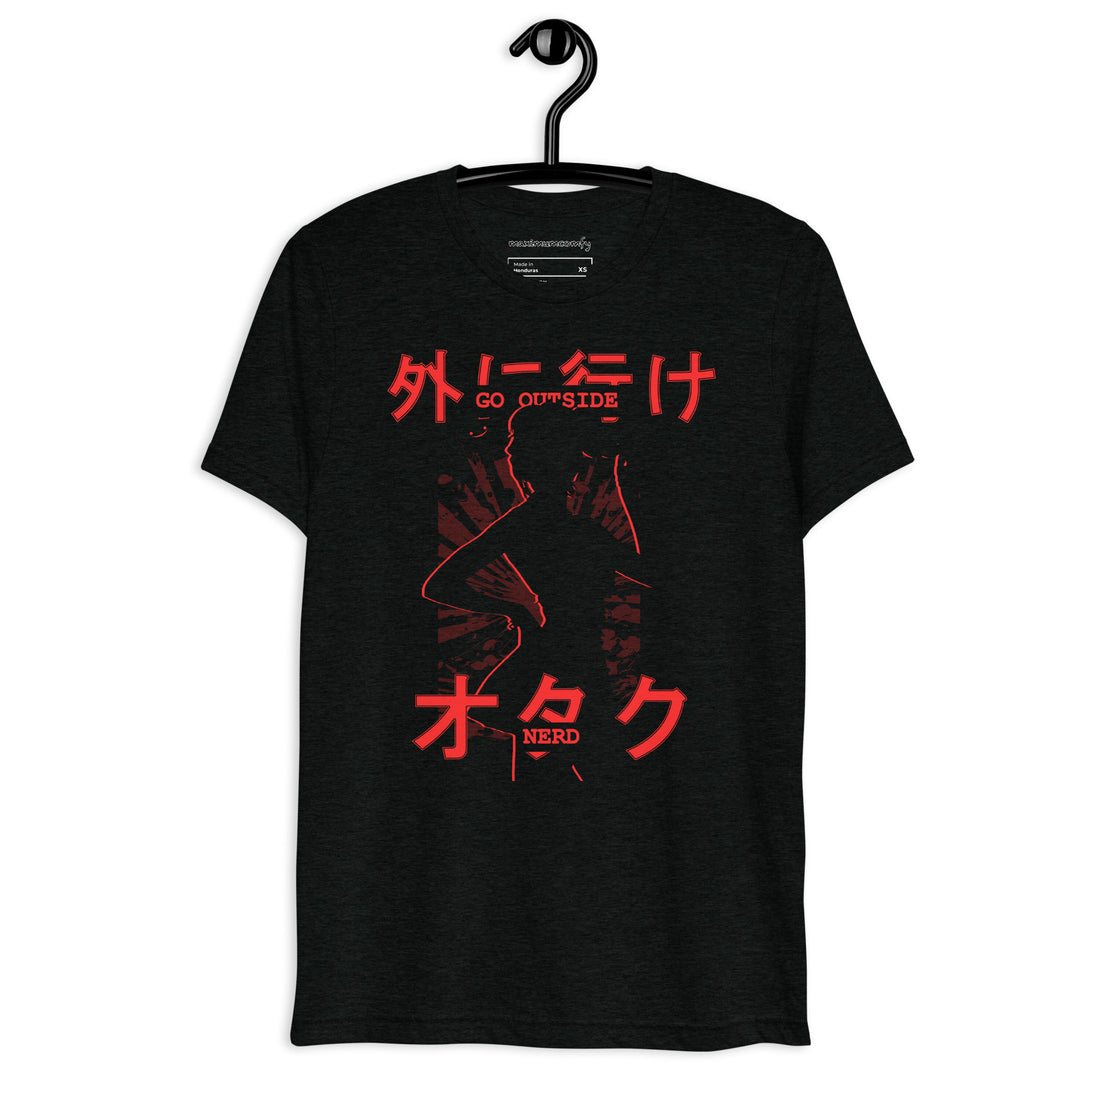 GO OUTSIDE NERD - Anime Shirt